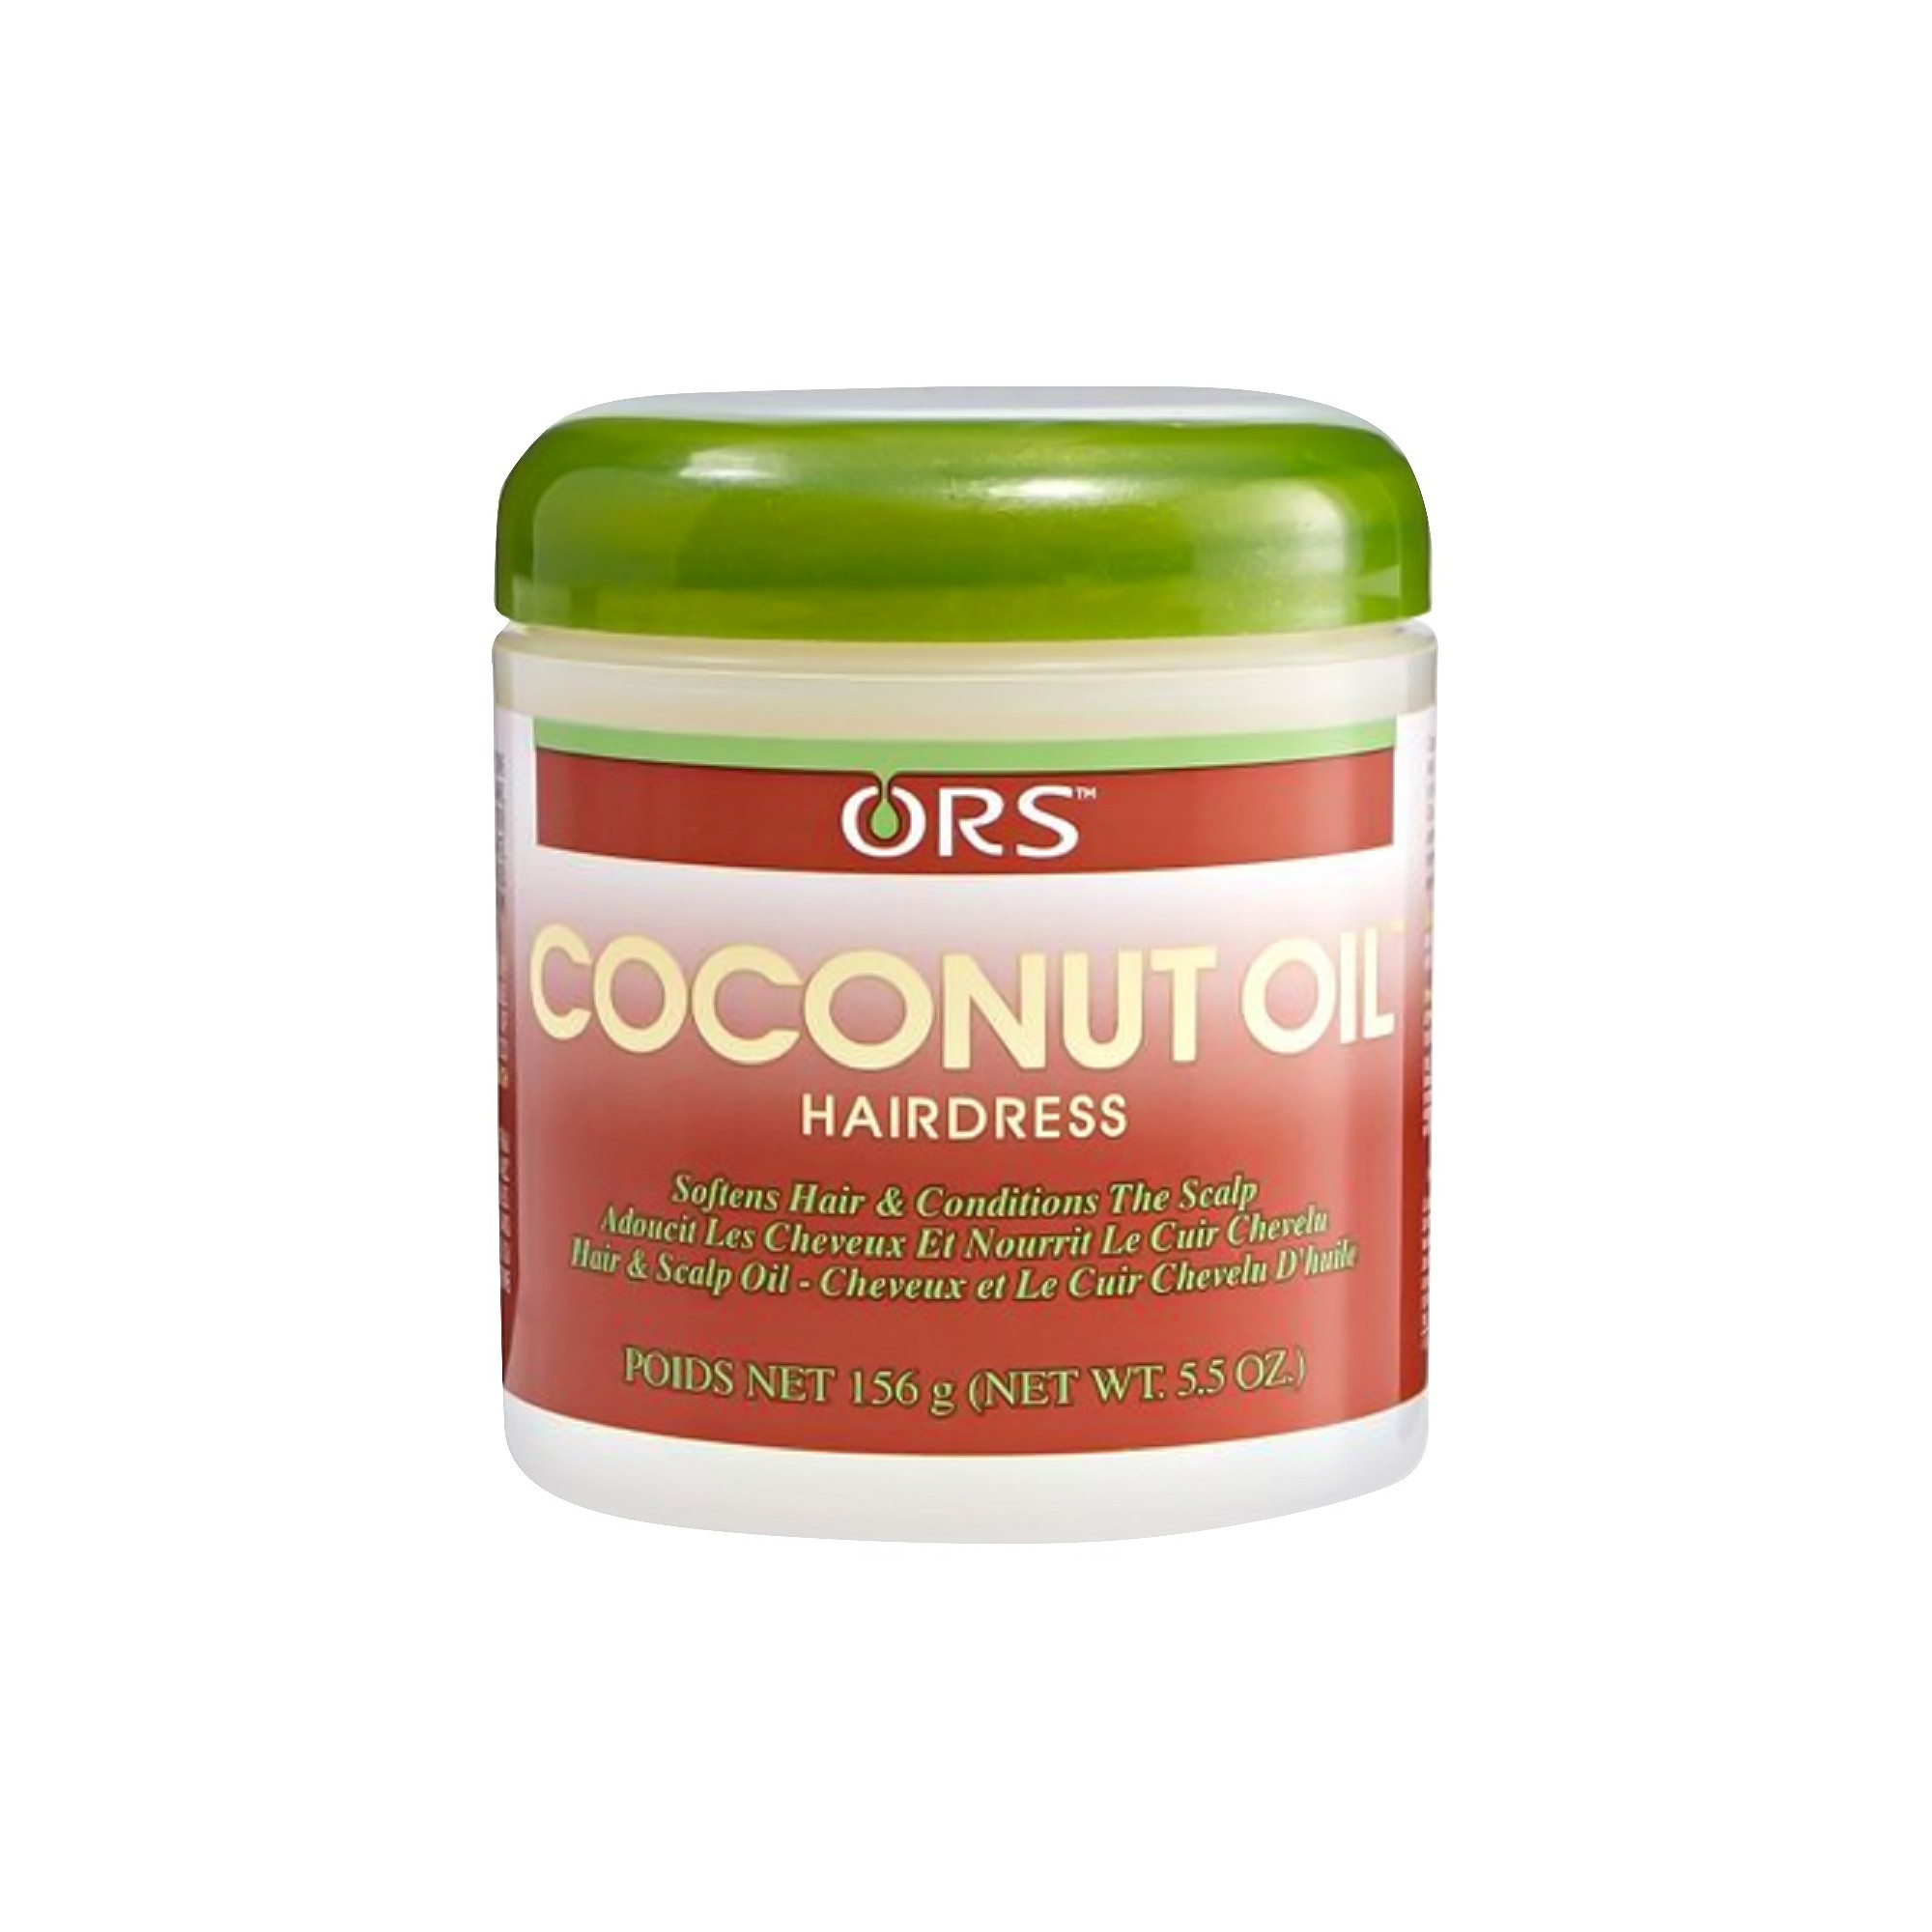 ORS Coconut Oil HairDress Softener - 5.5oz